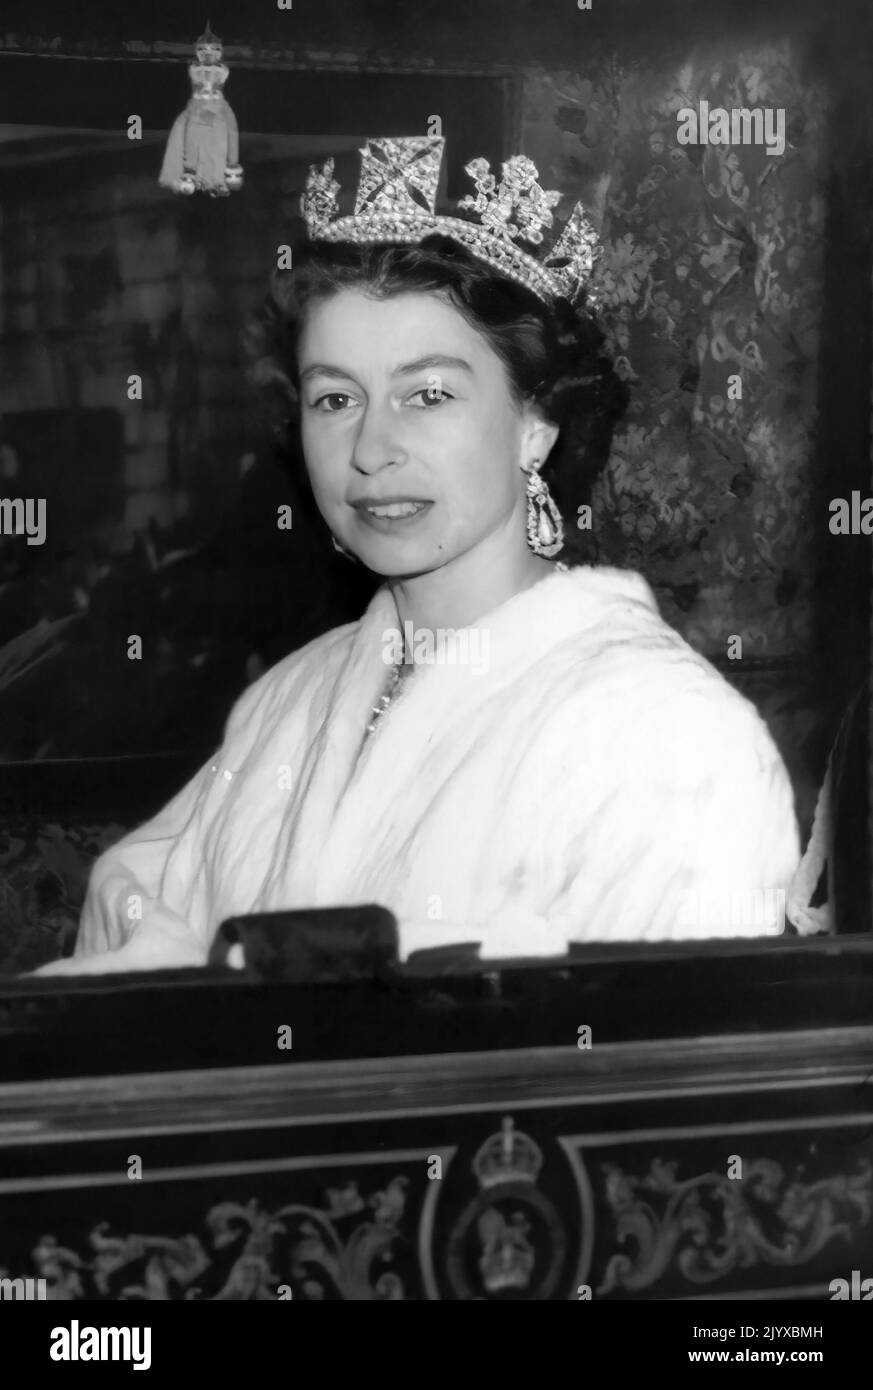 Königin Elizabeth II. Im irischen Staatswagen auf dem Weg vom Buckingham Palace zum Parlament zur Eröffnung des Parlaments am 5. November 1957. Stockfoto